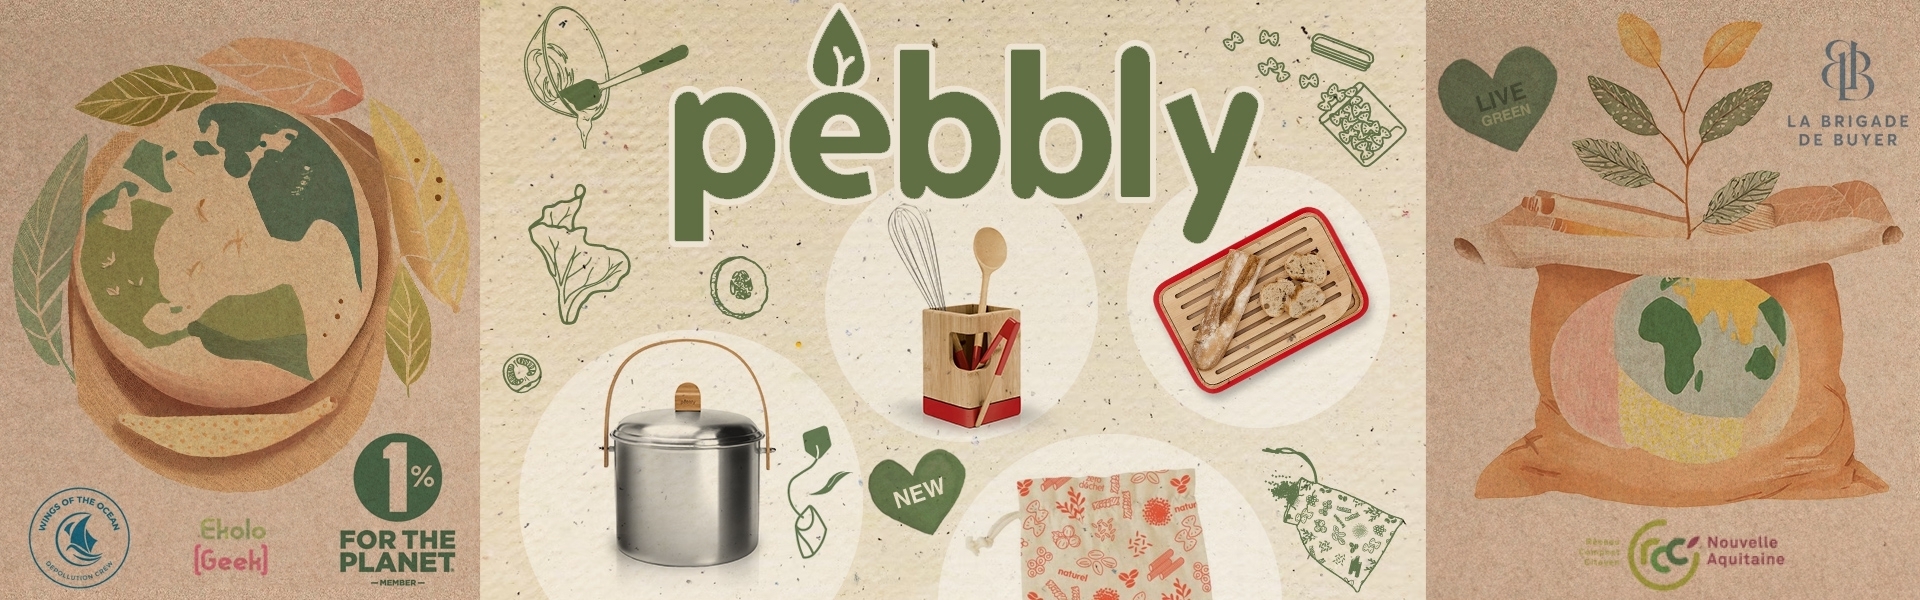 Pebbly - Nachhaltige und funktionelle Küchenprodukte aus Frankreich.